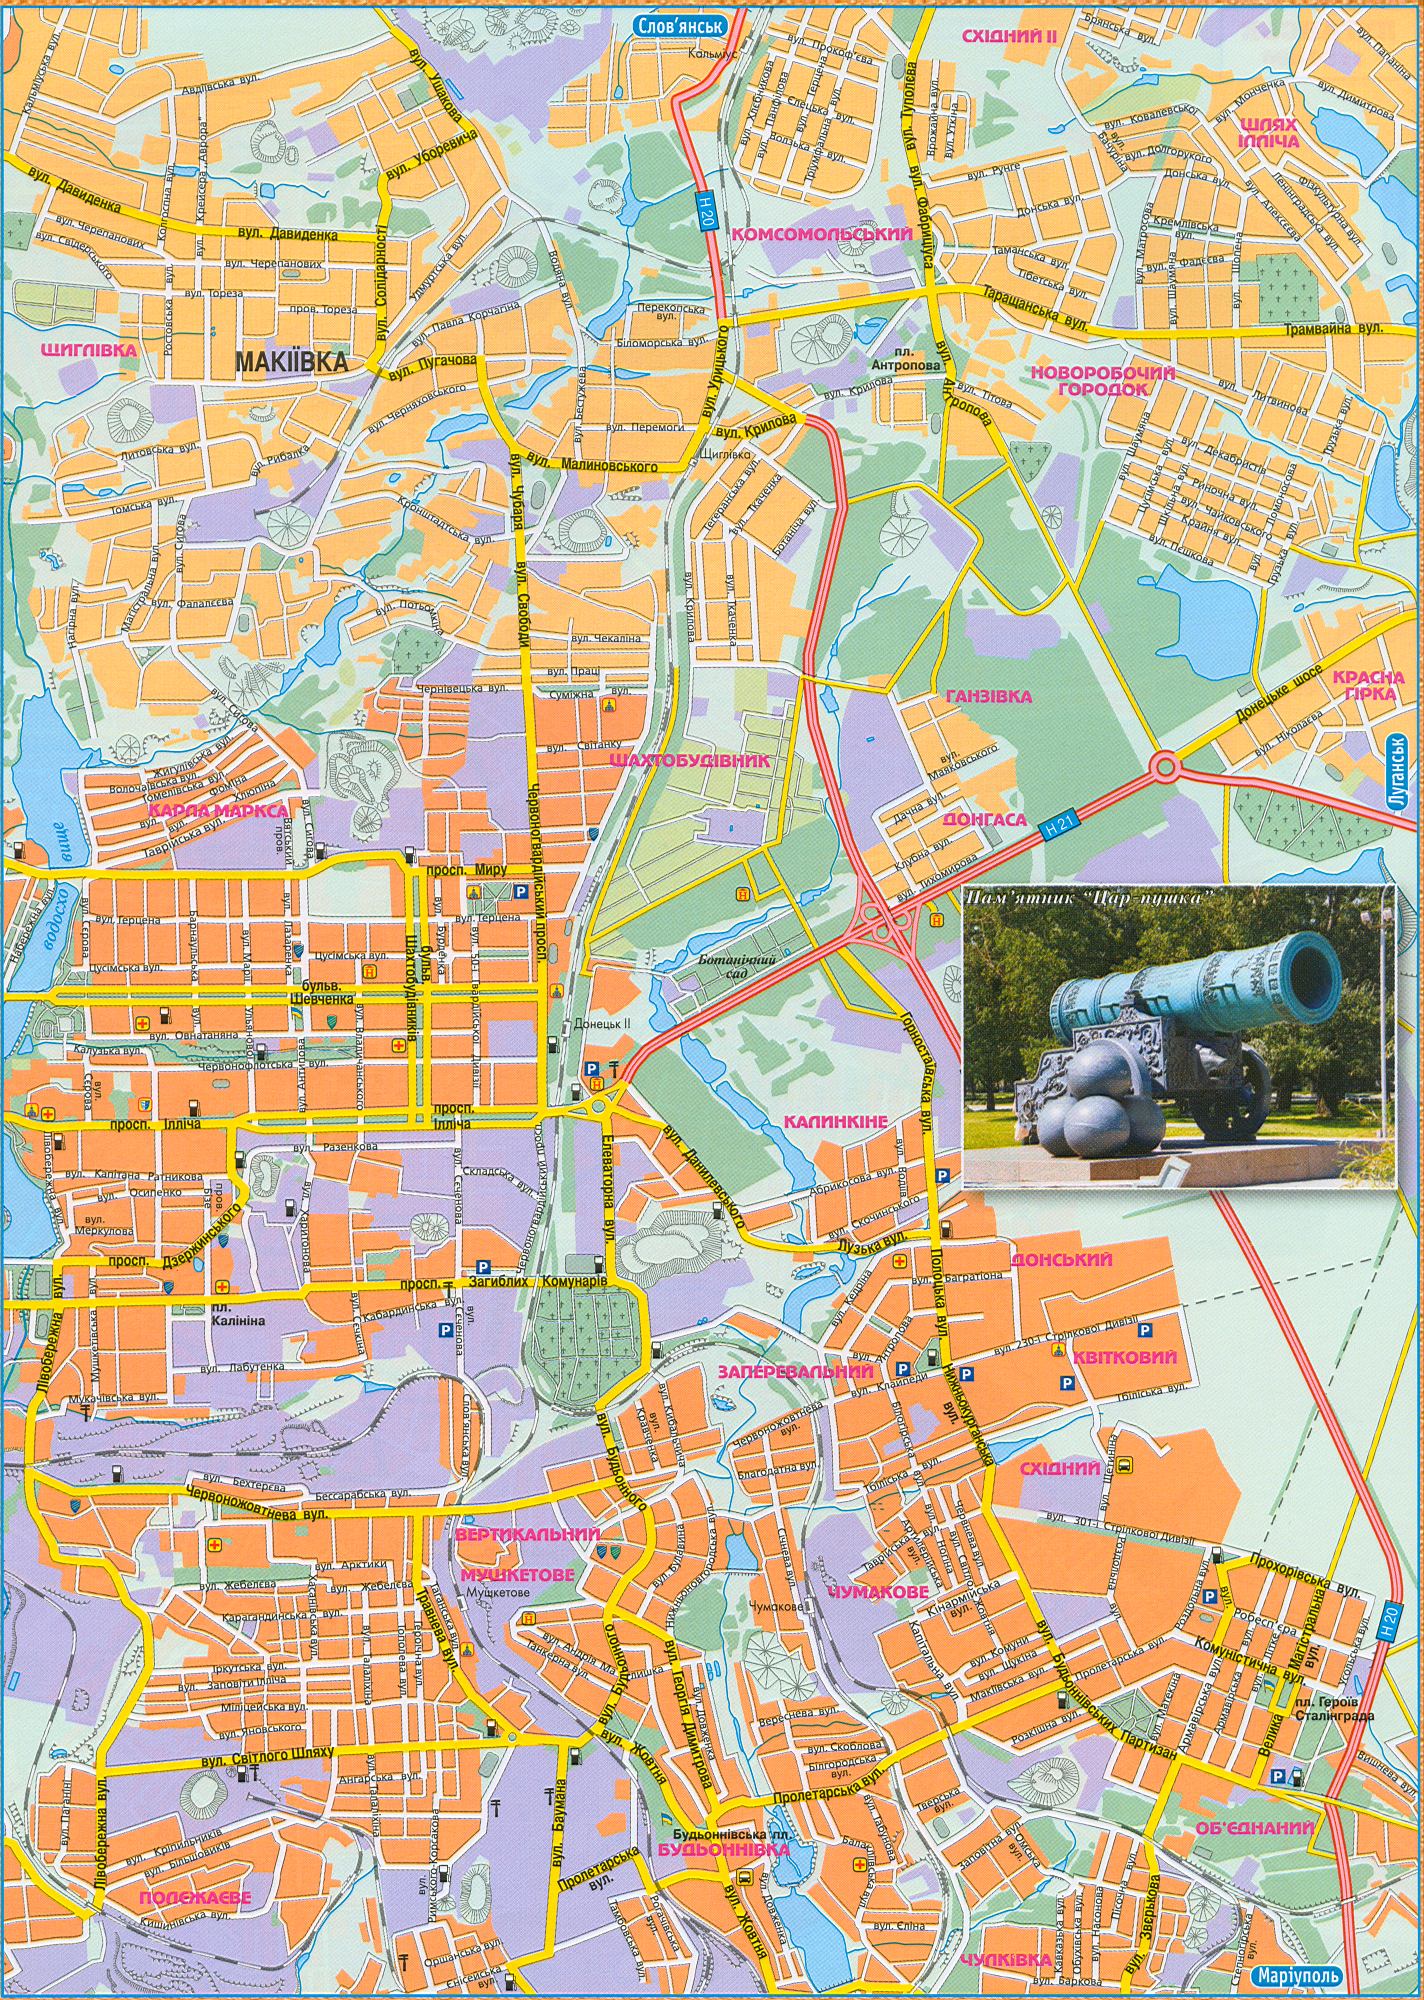 Карта Донецка новая 2008г. Автомобильные дороги города Донецк - карта масштаба 1см:500м. Скачать бесплатно, B0